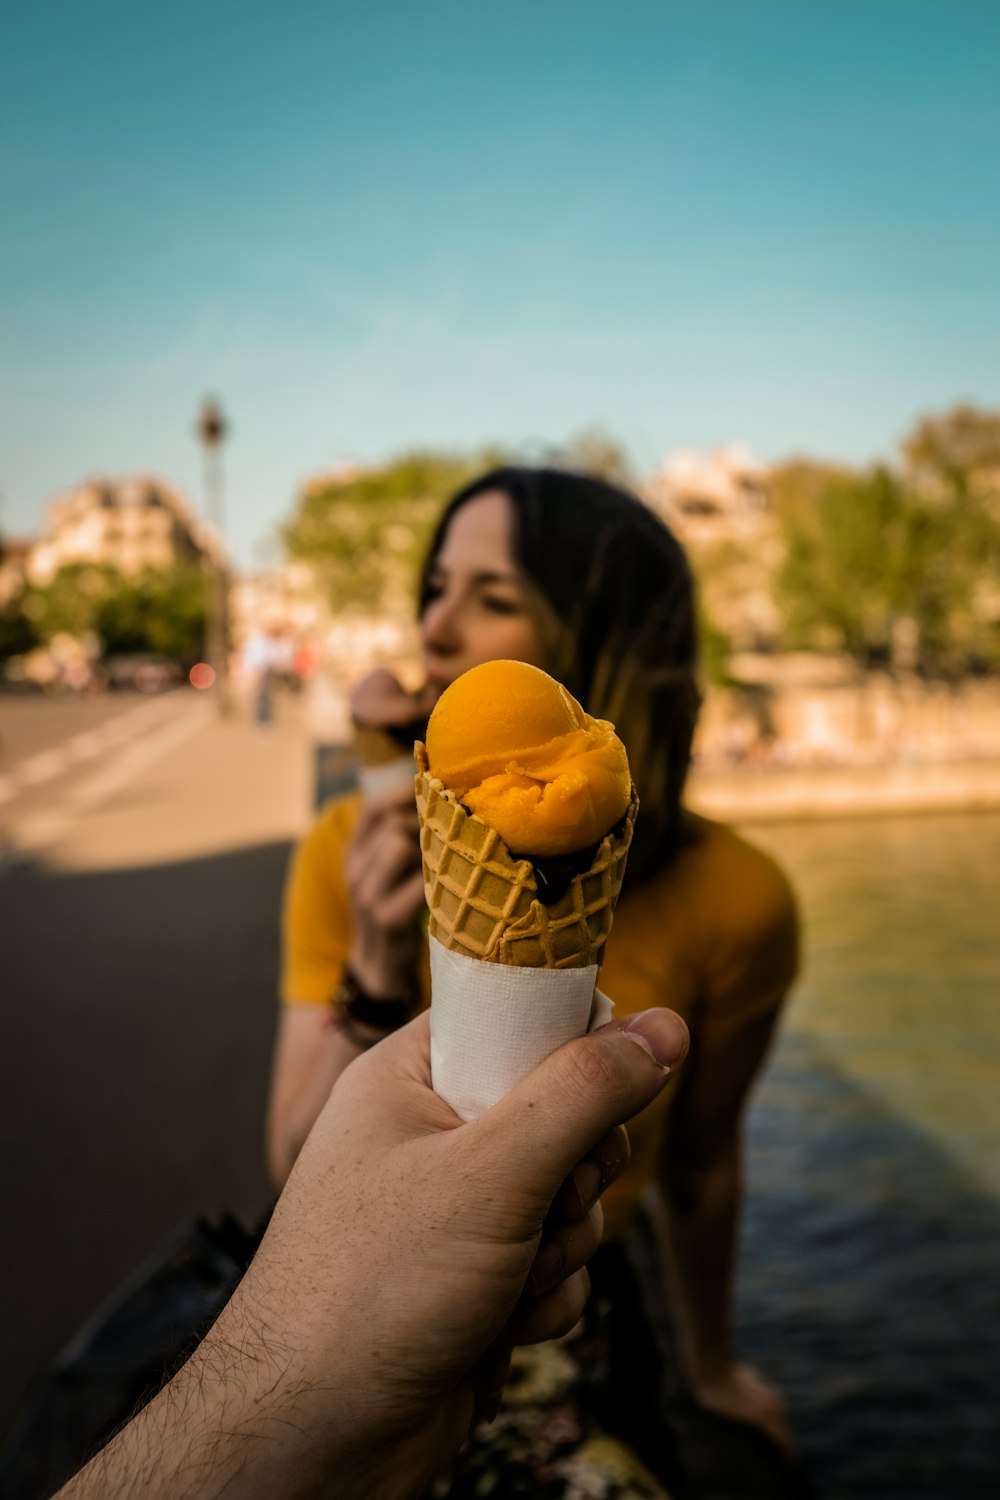 Fotografía de enfoque superficial de una persona que sostiene un helado en el cono